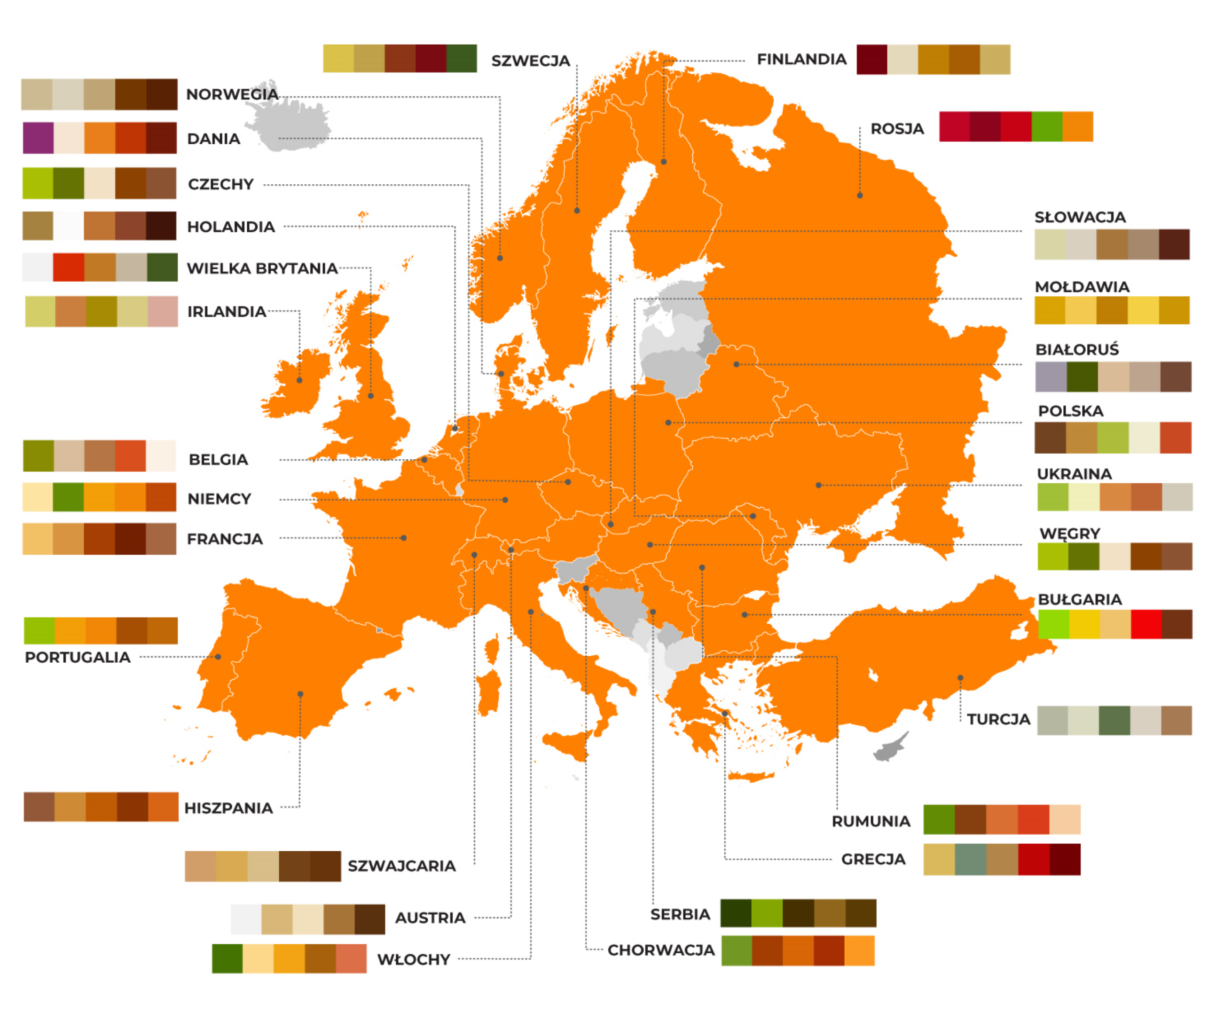 Mapa z paletą barw obrazującą lunche typowe dla różnych krajów